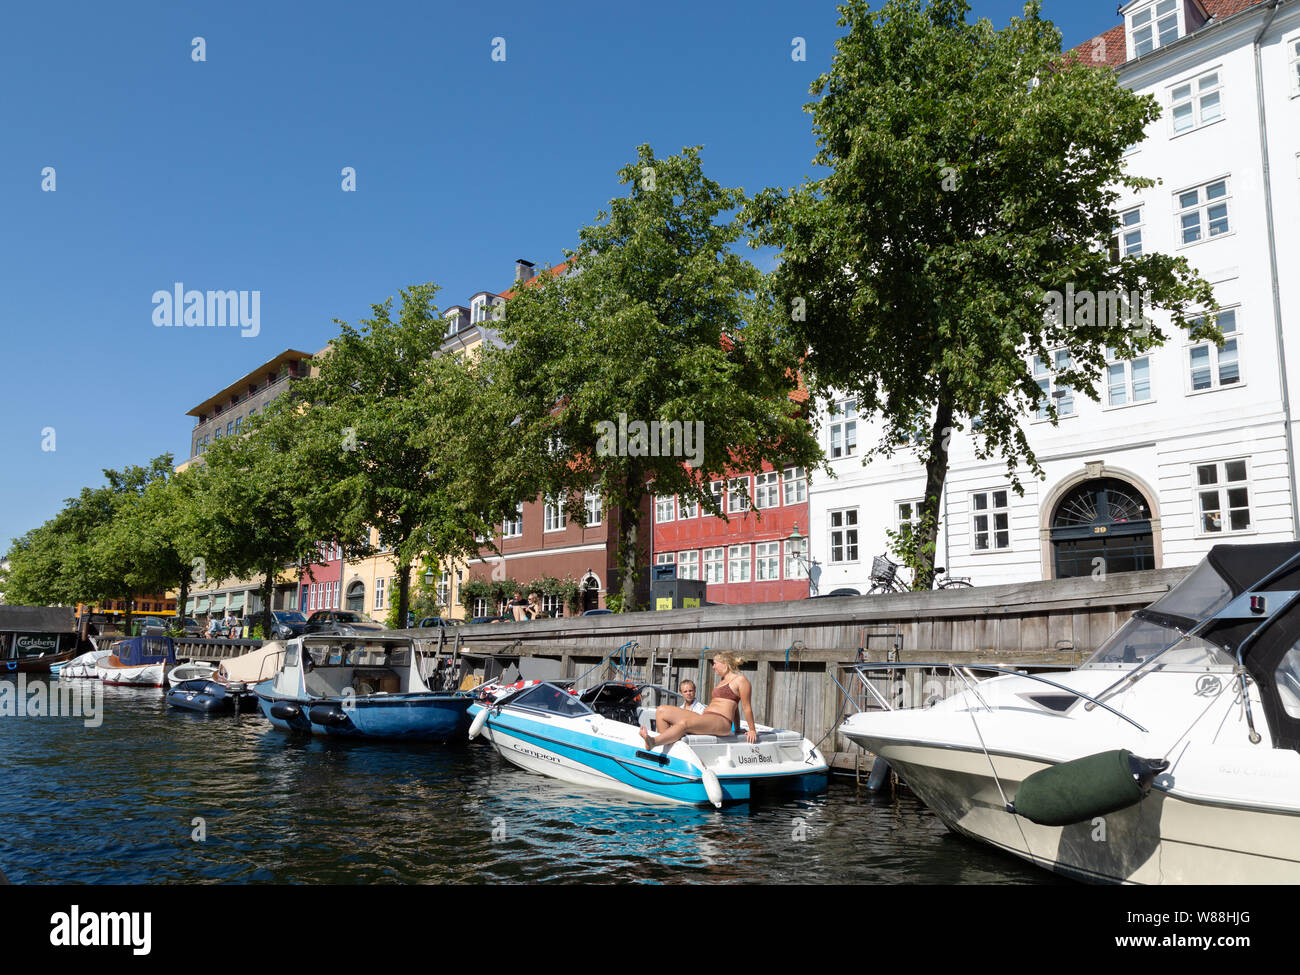 Christianshavn Copenhagen Denmark - canal scene  in summer, Christianshavn, Copenhagen Scandinavia Europe Stock Photo